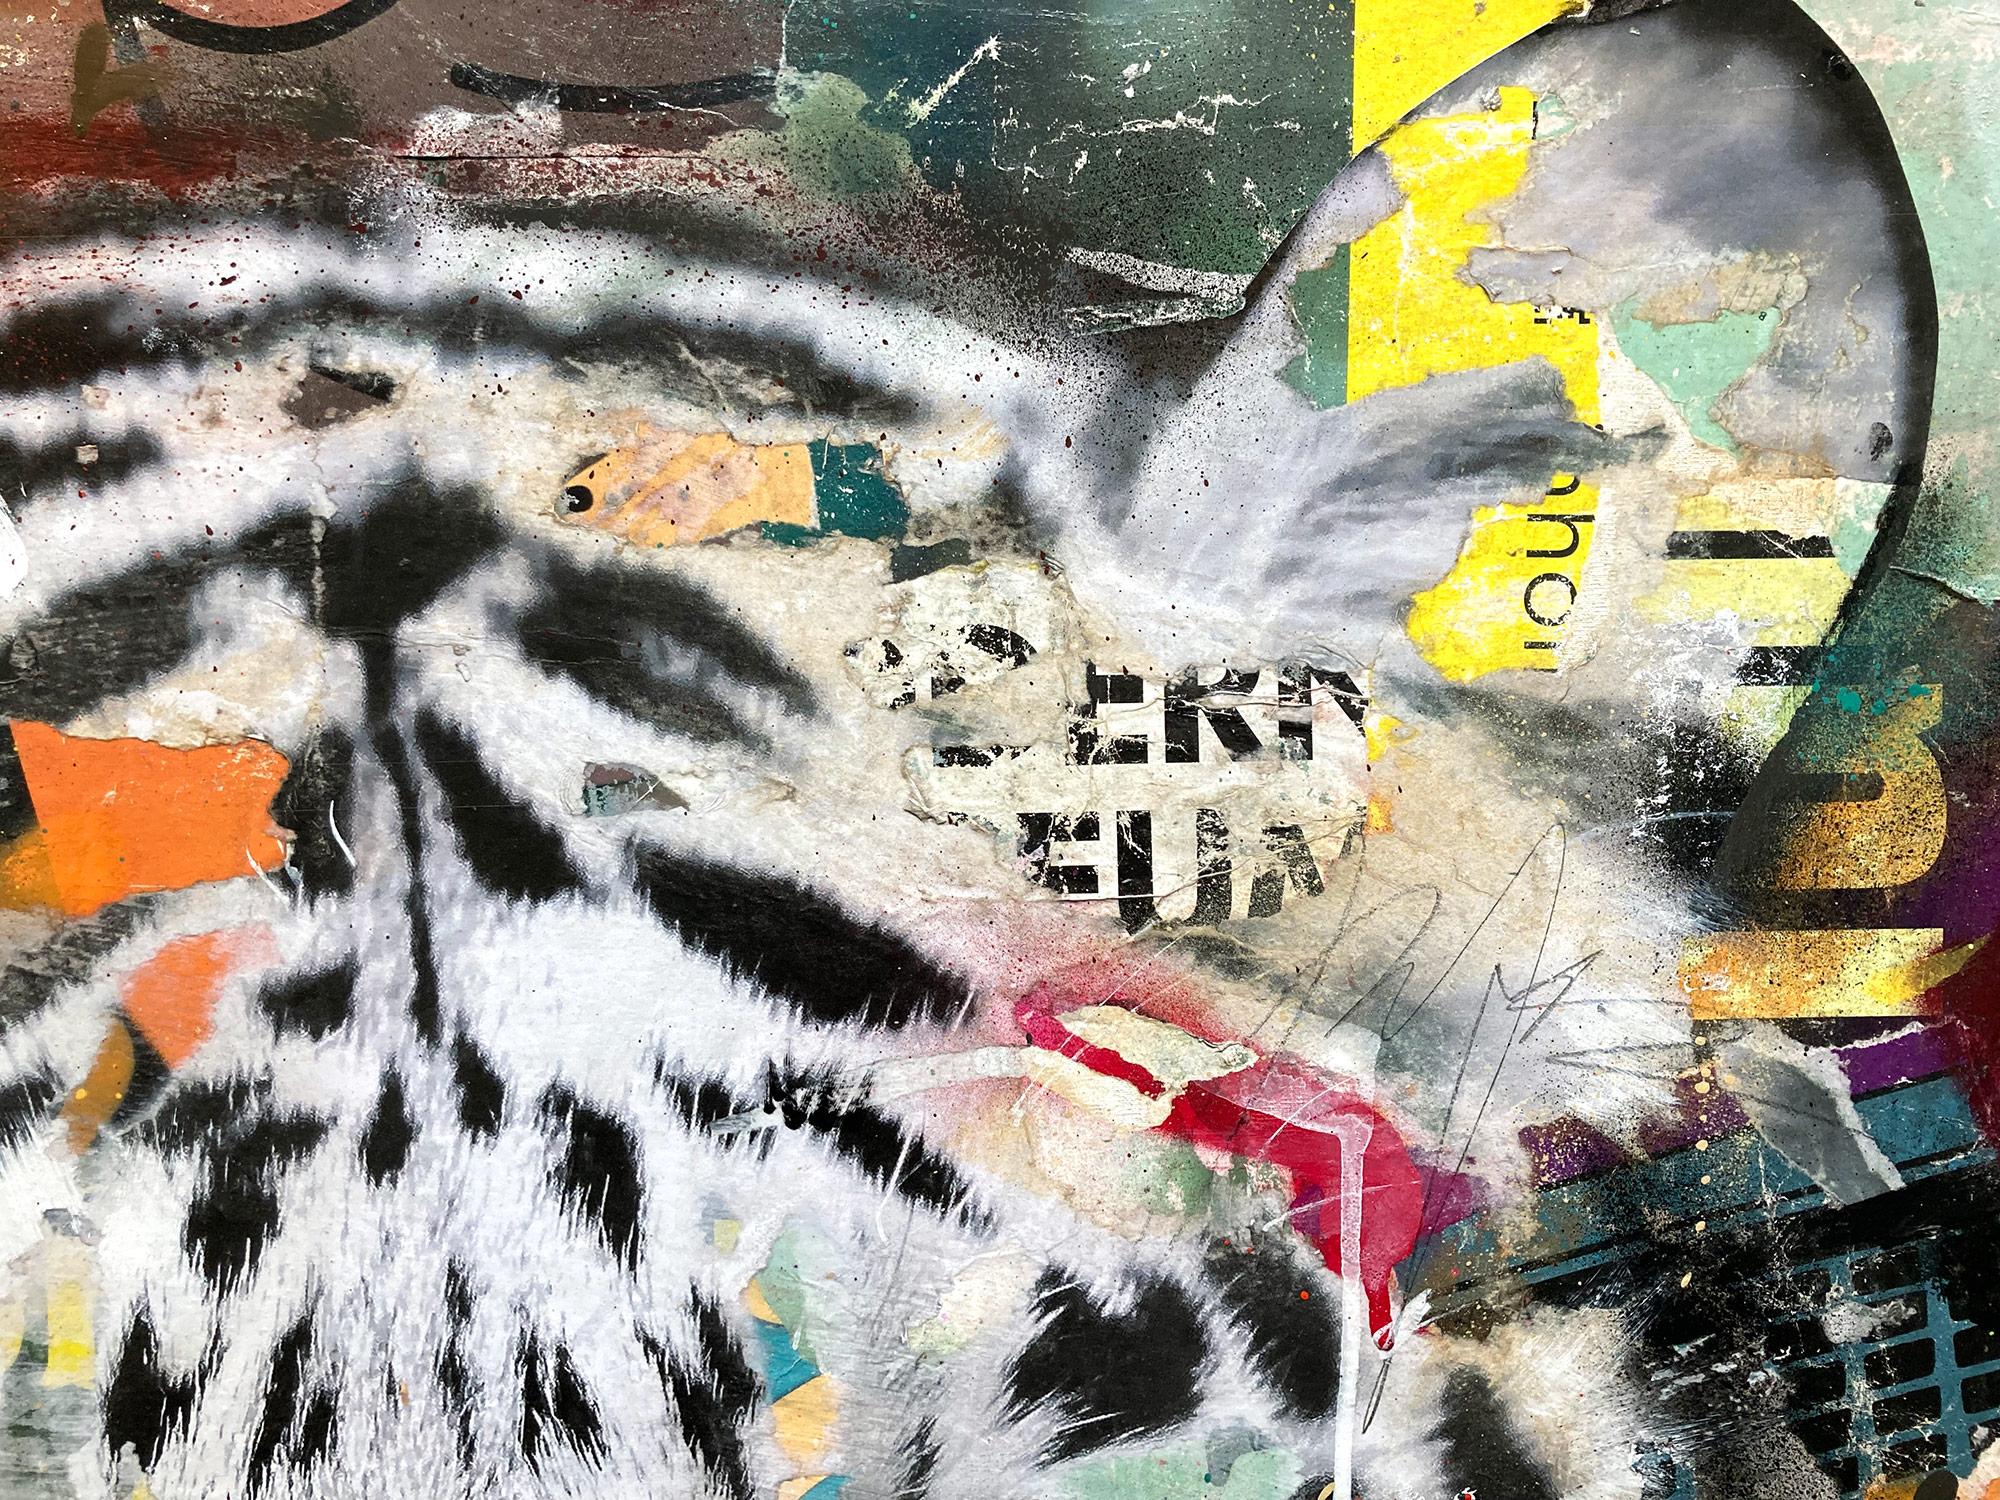 Dieses Stück stellt einen Tiger dar, der mit schönen, ausdrucksstarken Farben und einem unverwechselbaren Street-Art-Design gestaltet ist. Dieses Stück strotzt vor Energie und romantischer Schönheit. Die Komposition und die kühne Collage machen eine